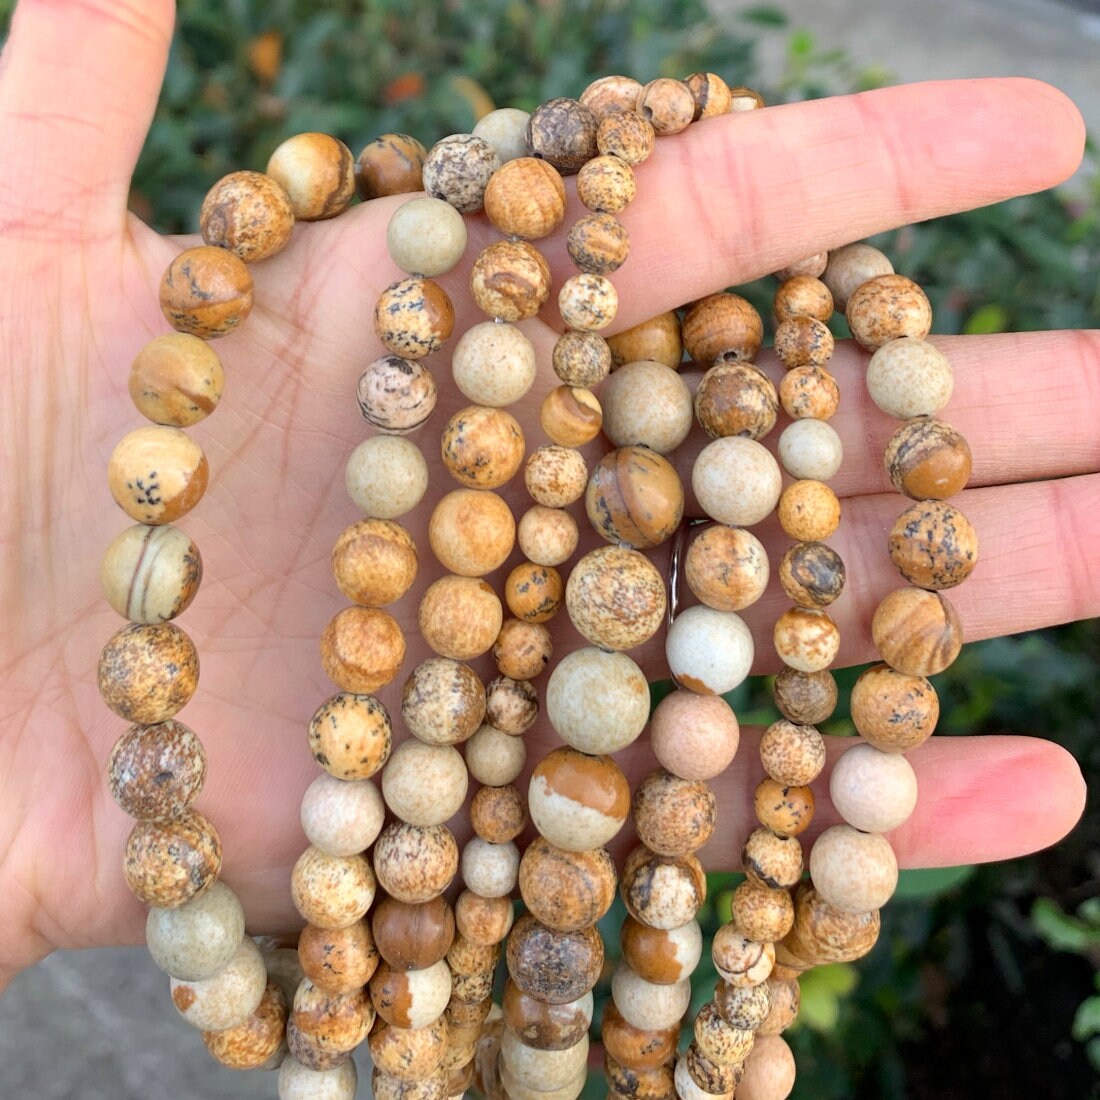 NaturalGemstone Picture Jasper Stone Jewelry Making Loose Beads Strand 15" 